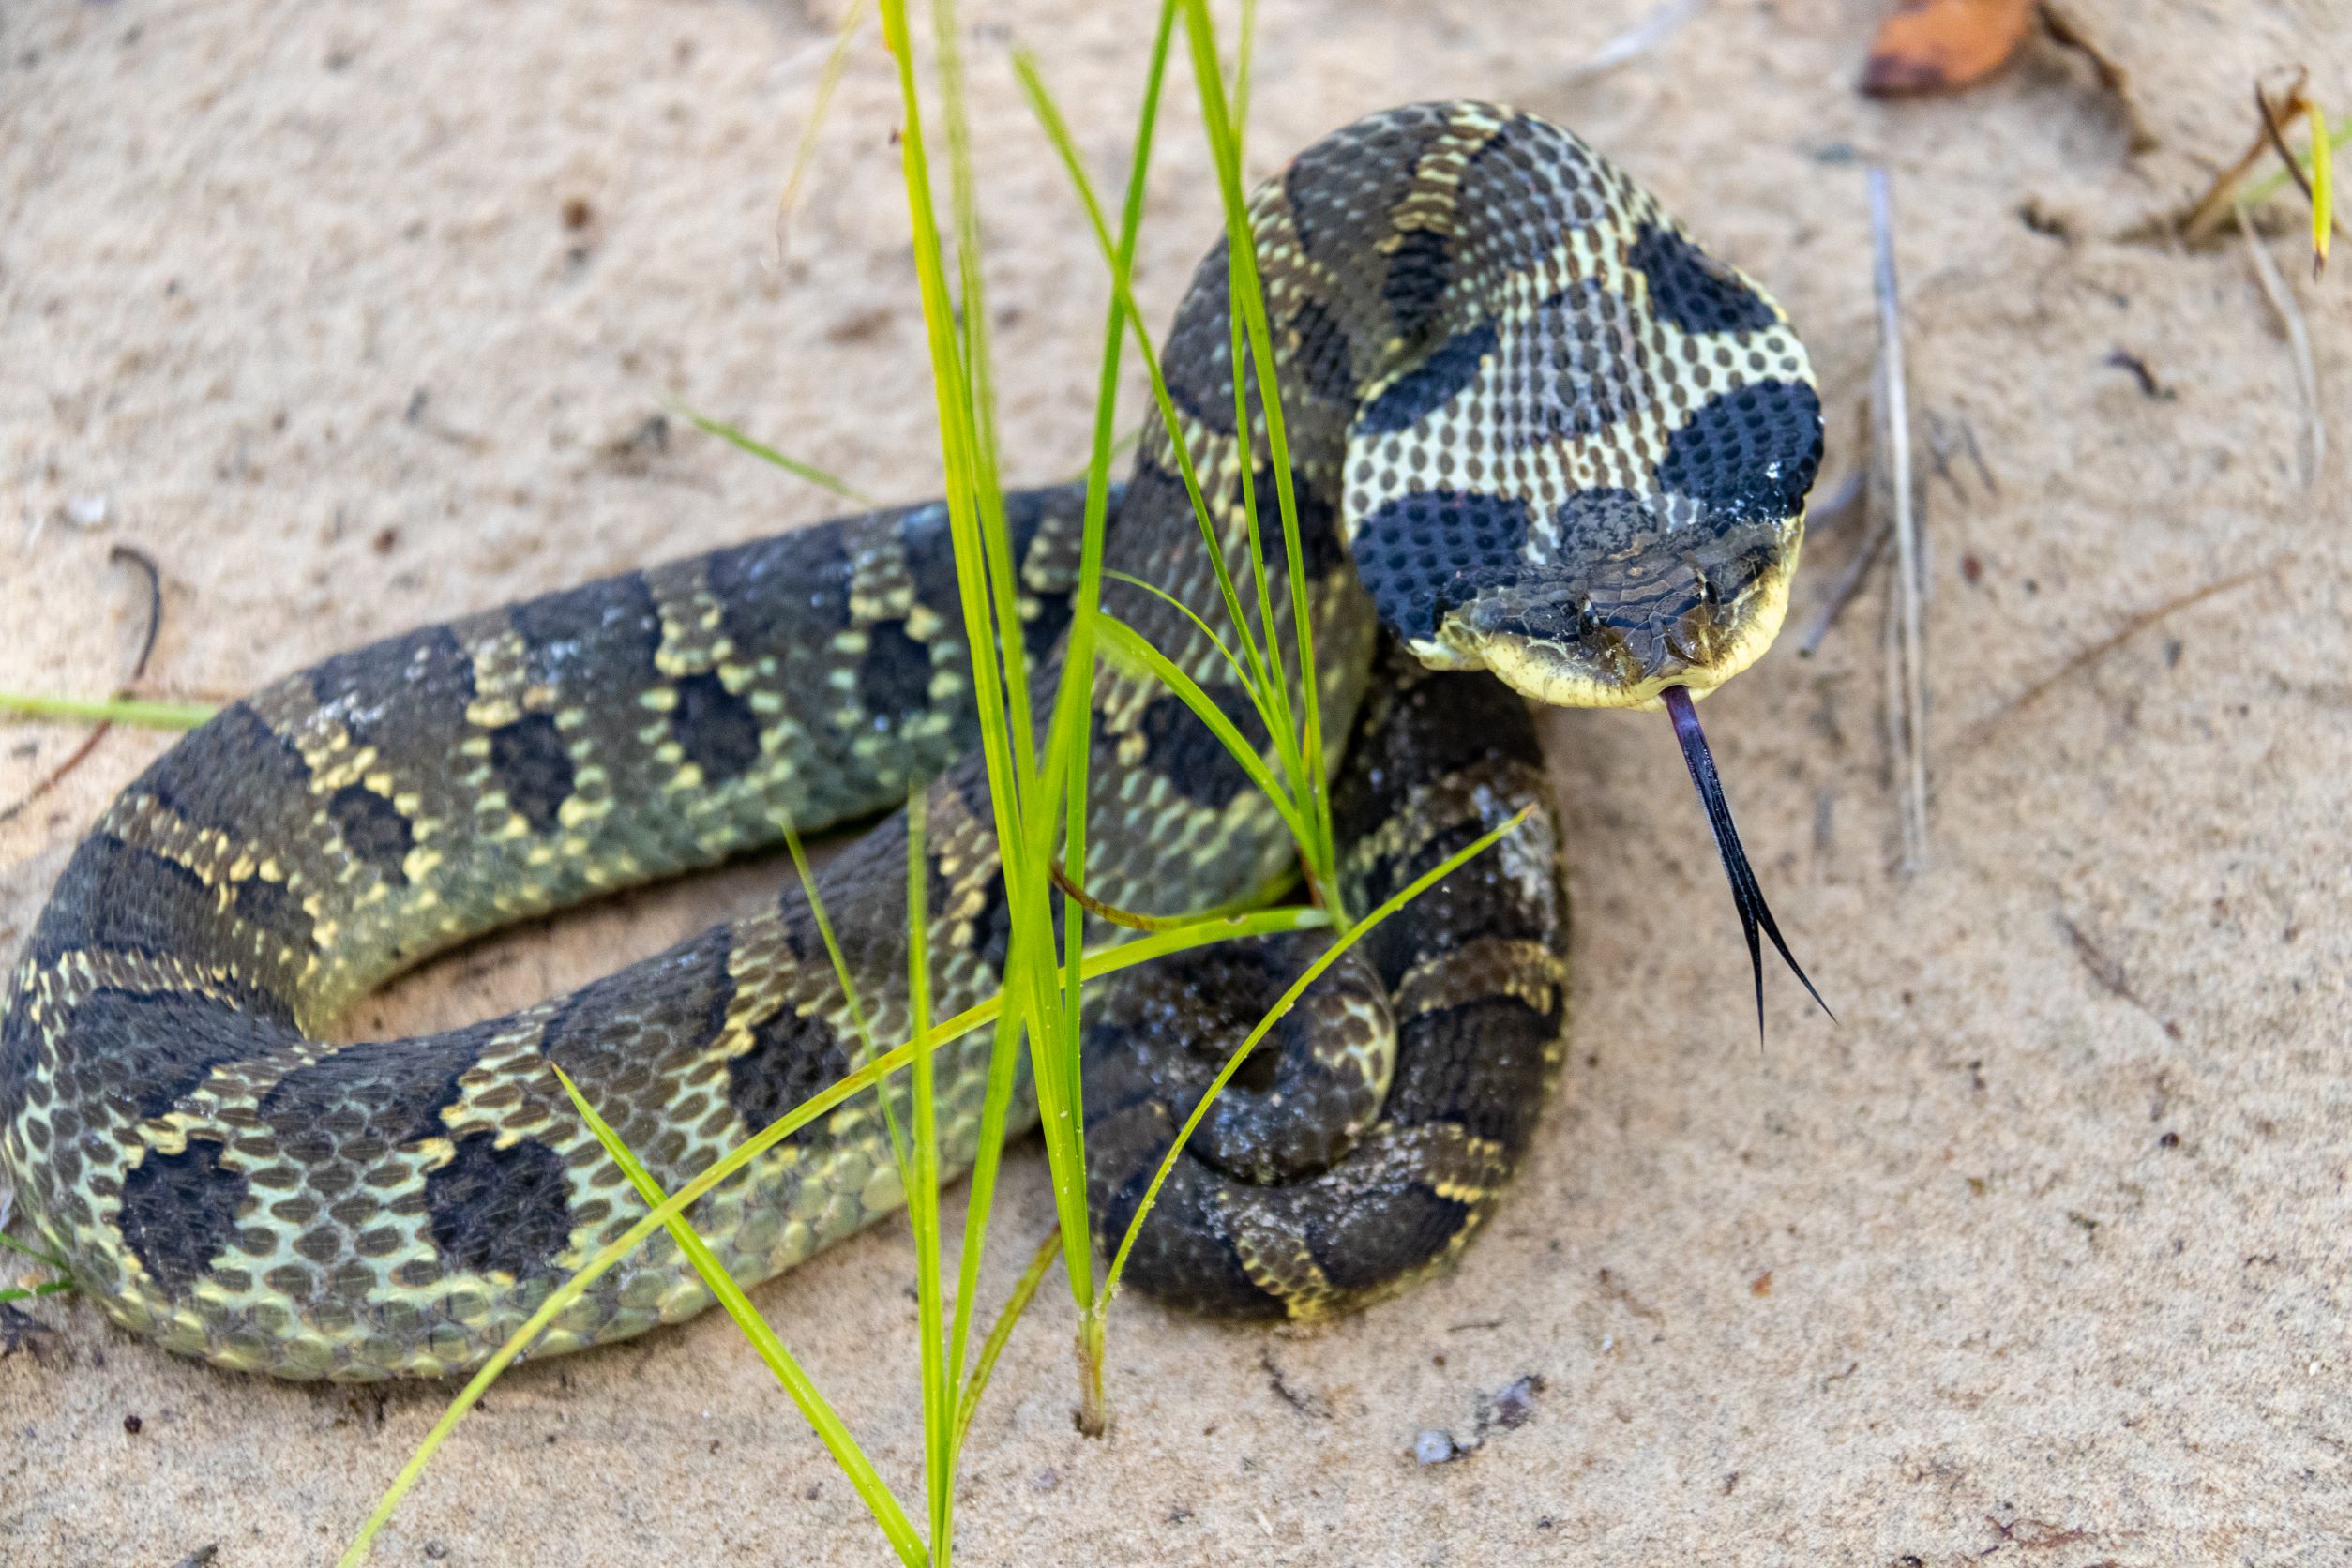 What do Eastern Hognose snakes look like?